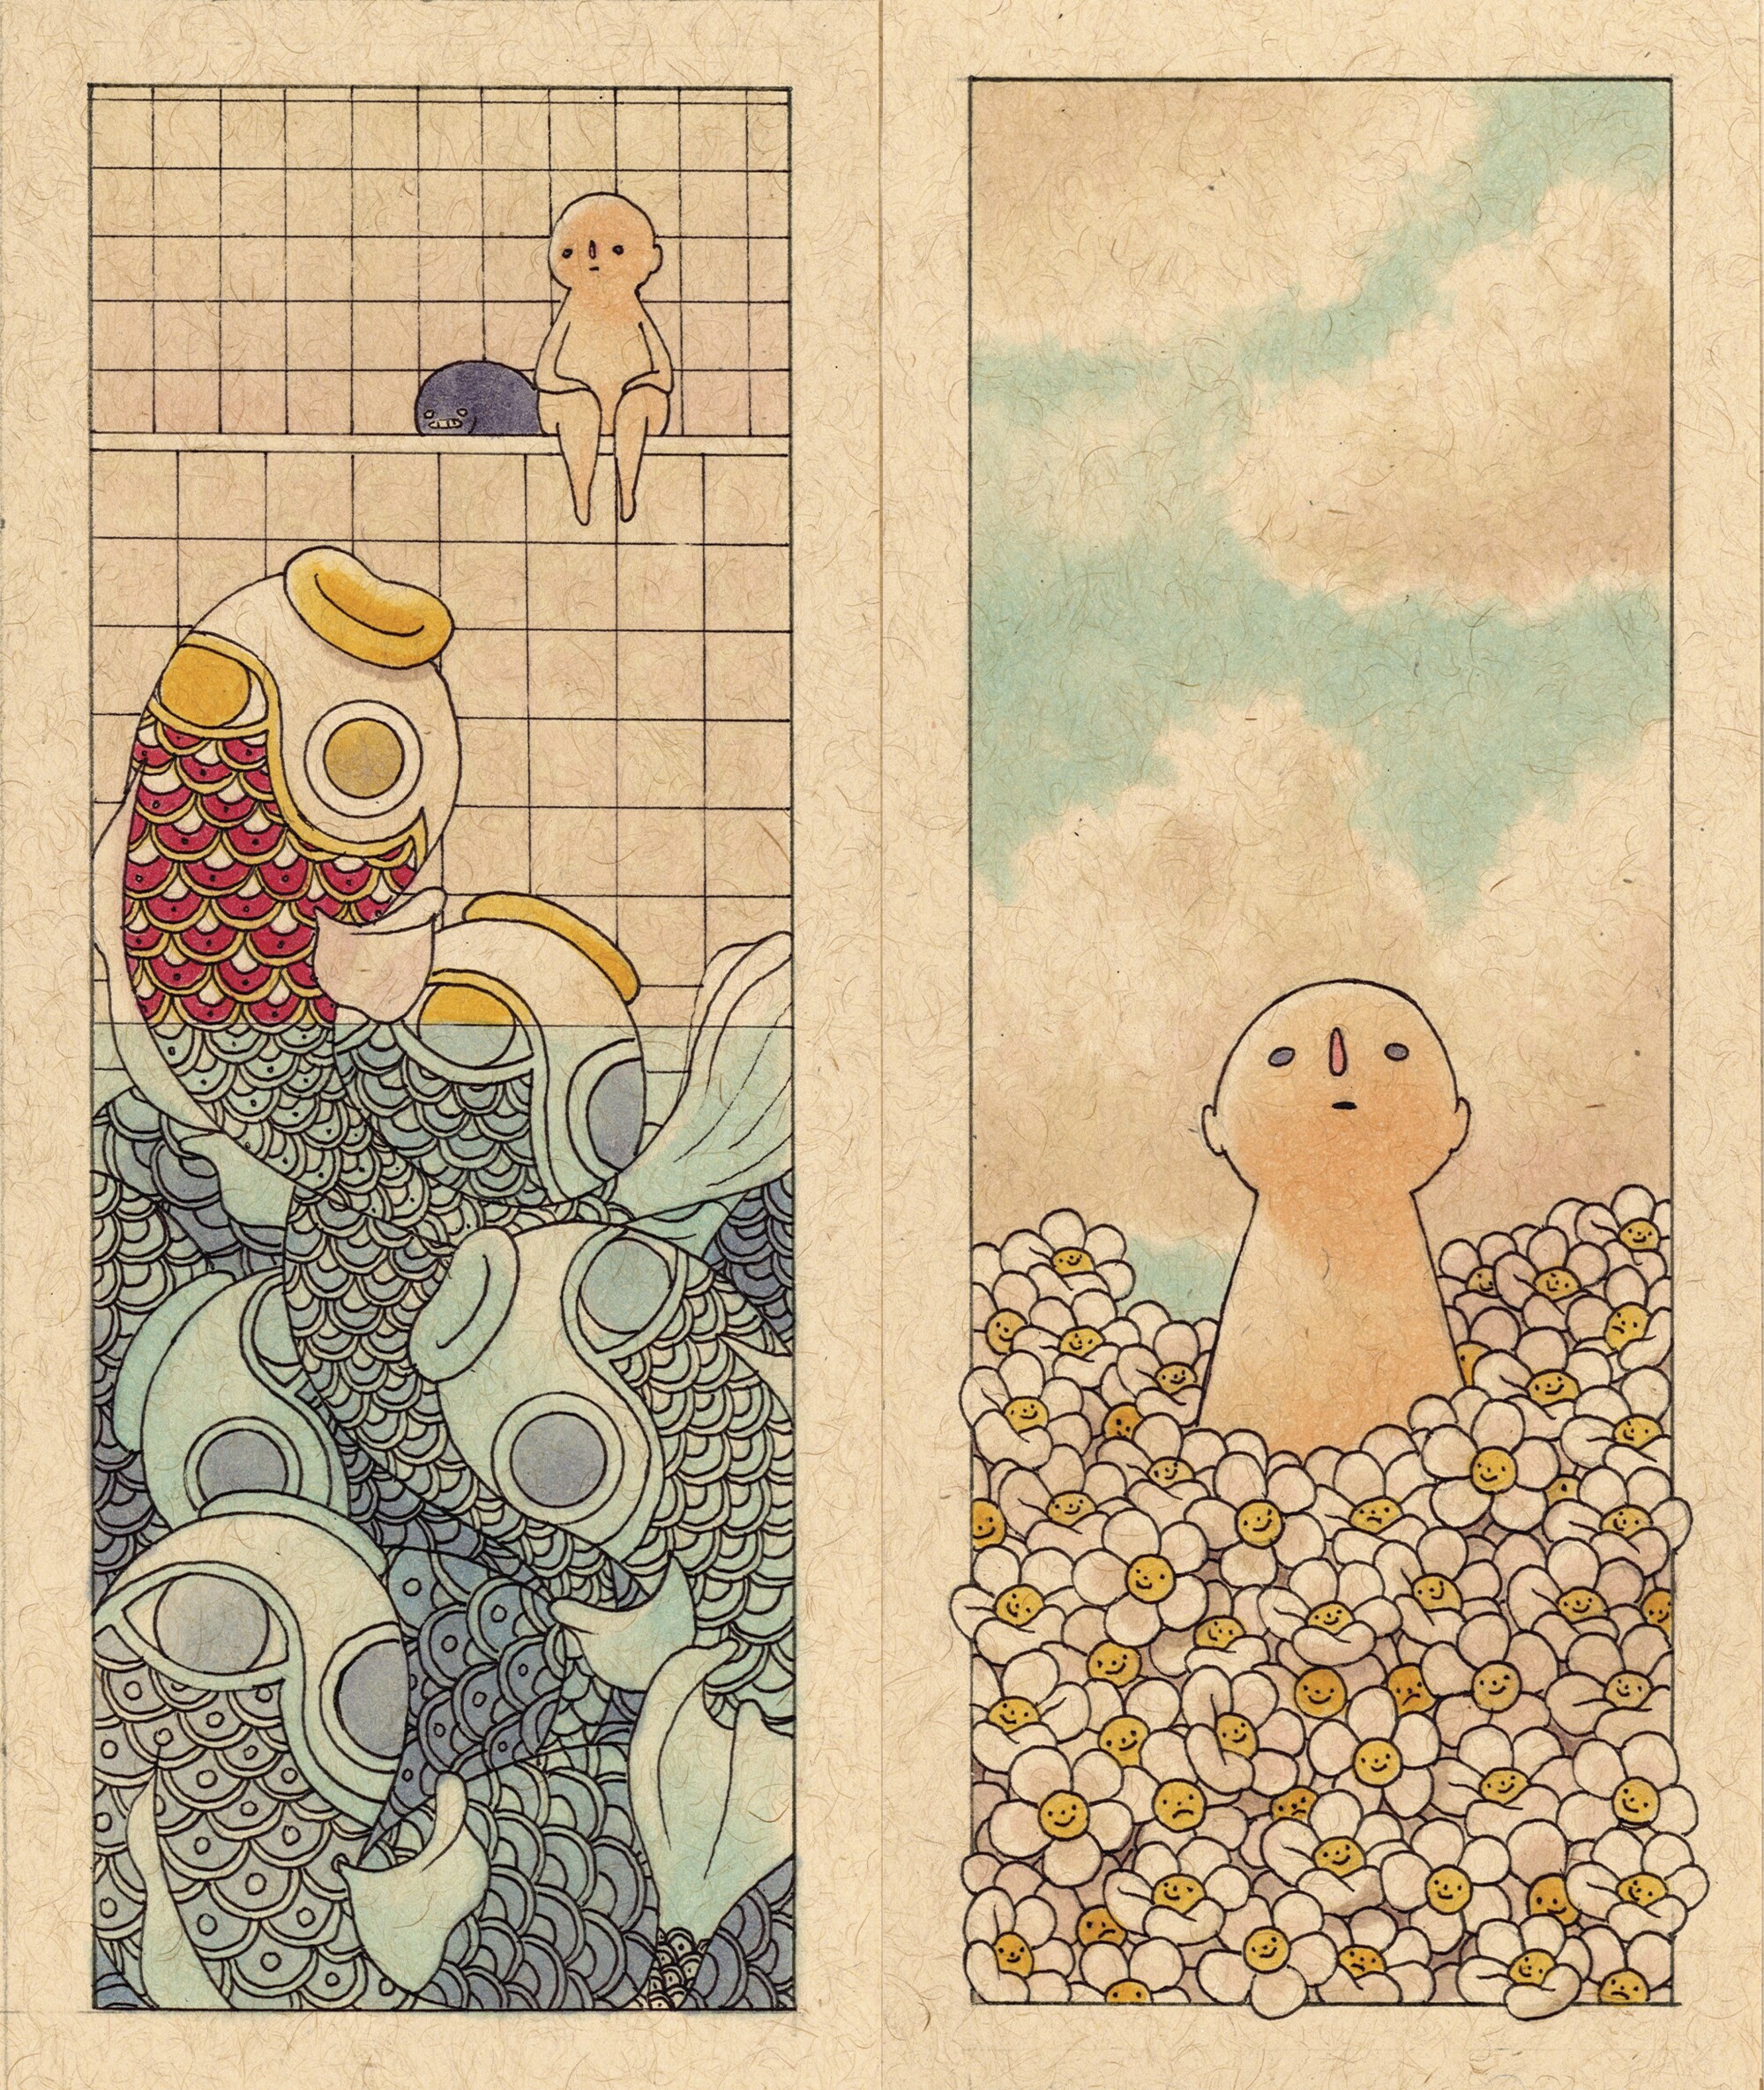 Ilustração de uma pessoa sentada sobre um peixe no estilo japonês e uma pessoa em um campo de margaridas.